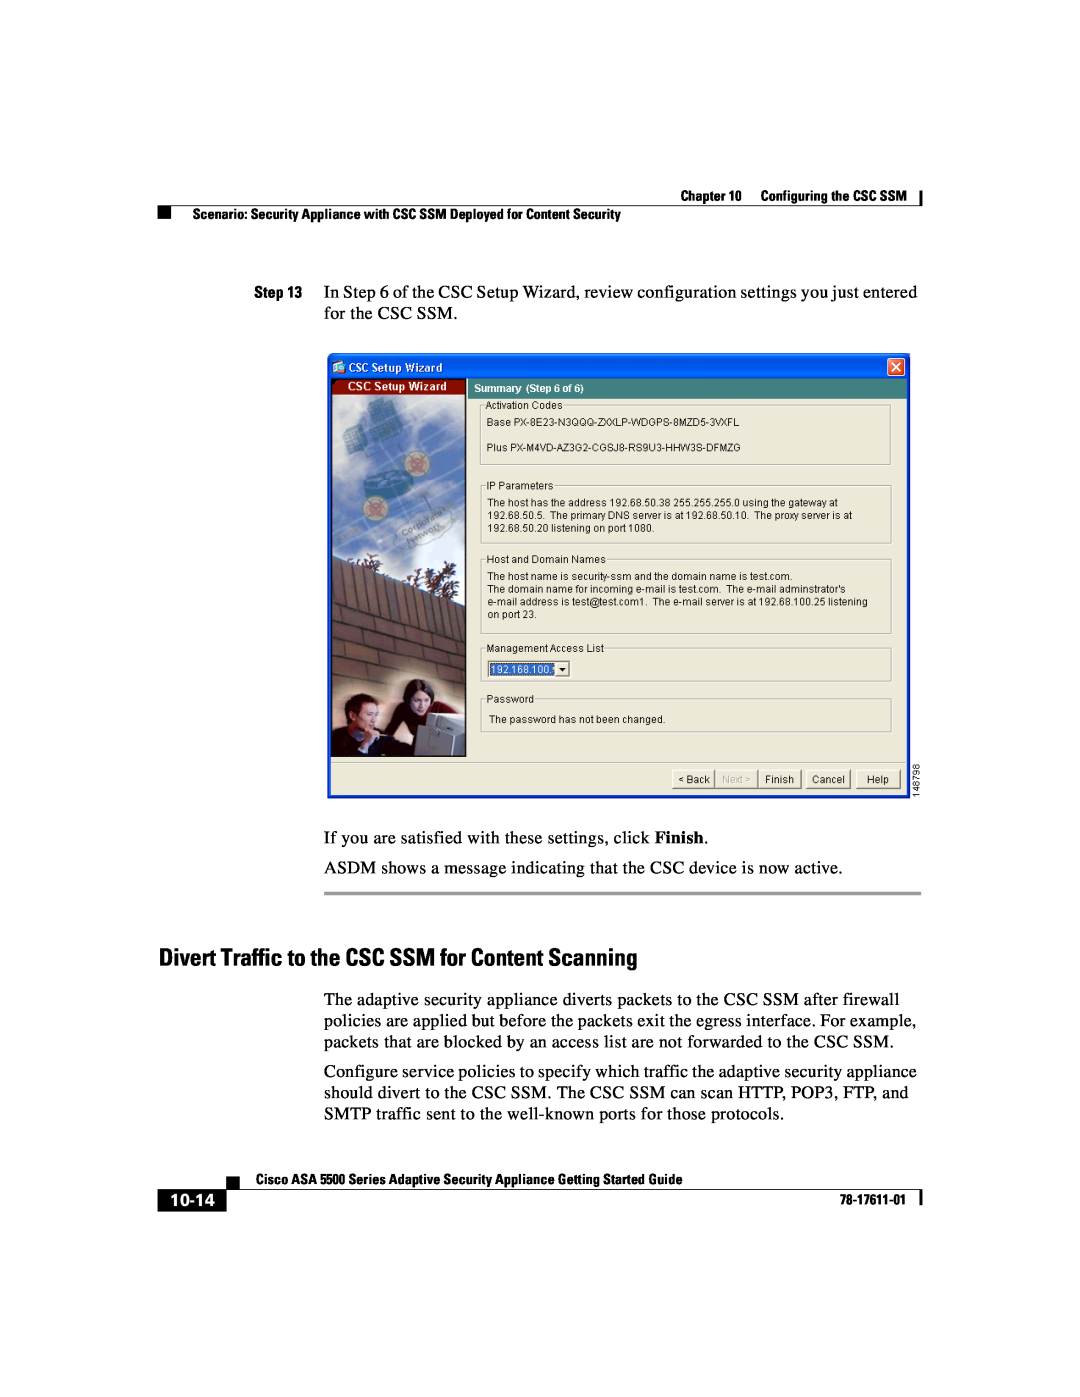 Cisco Systems ASA 5500 manual 10-14 